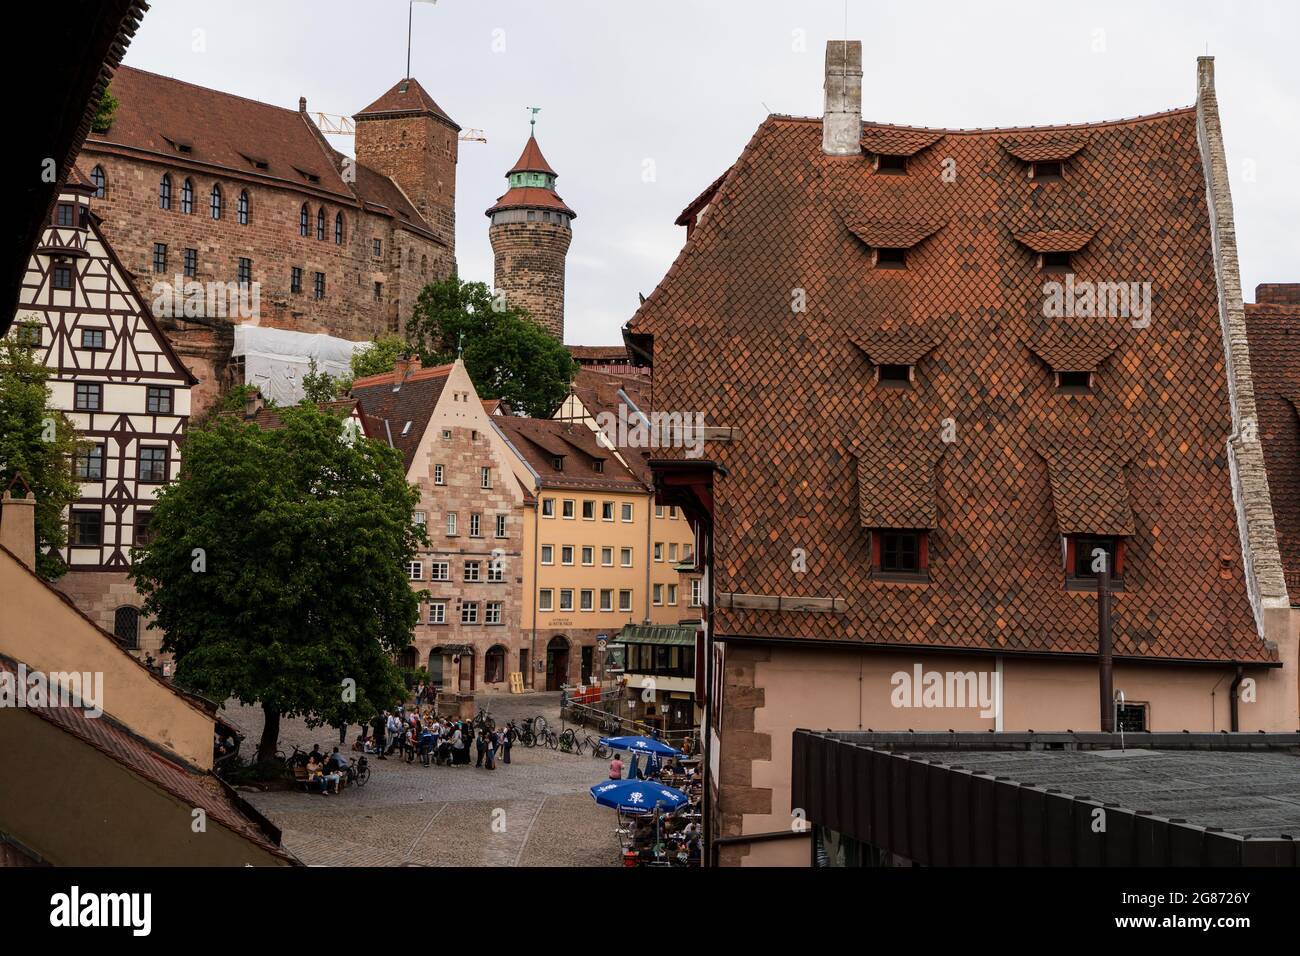 Nurnberg/Nuremberg Old Town Stock Photo